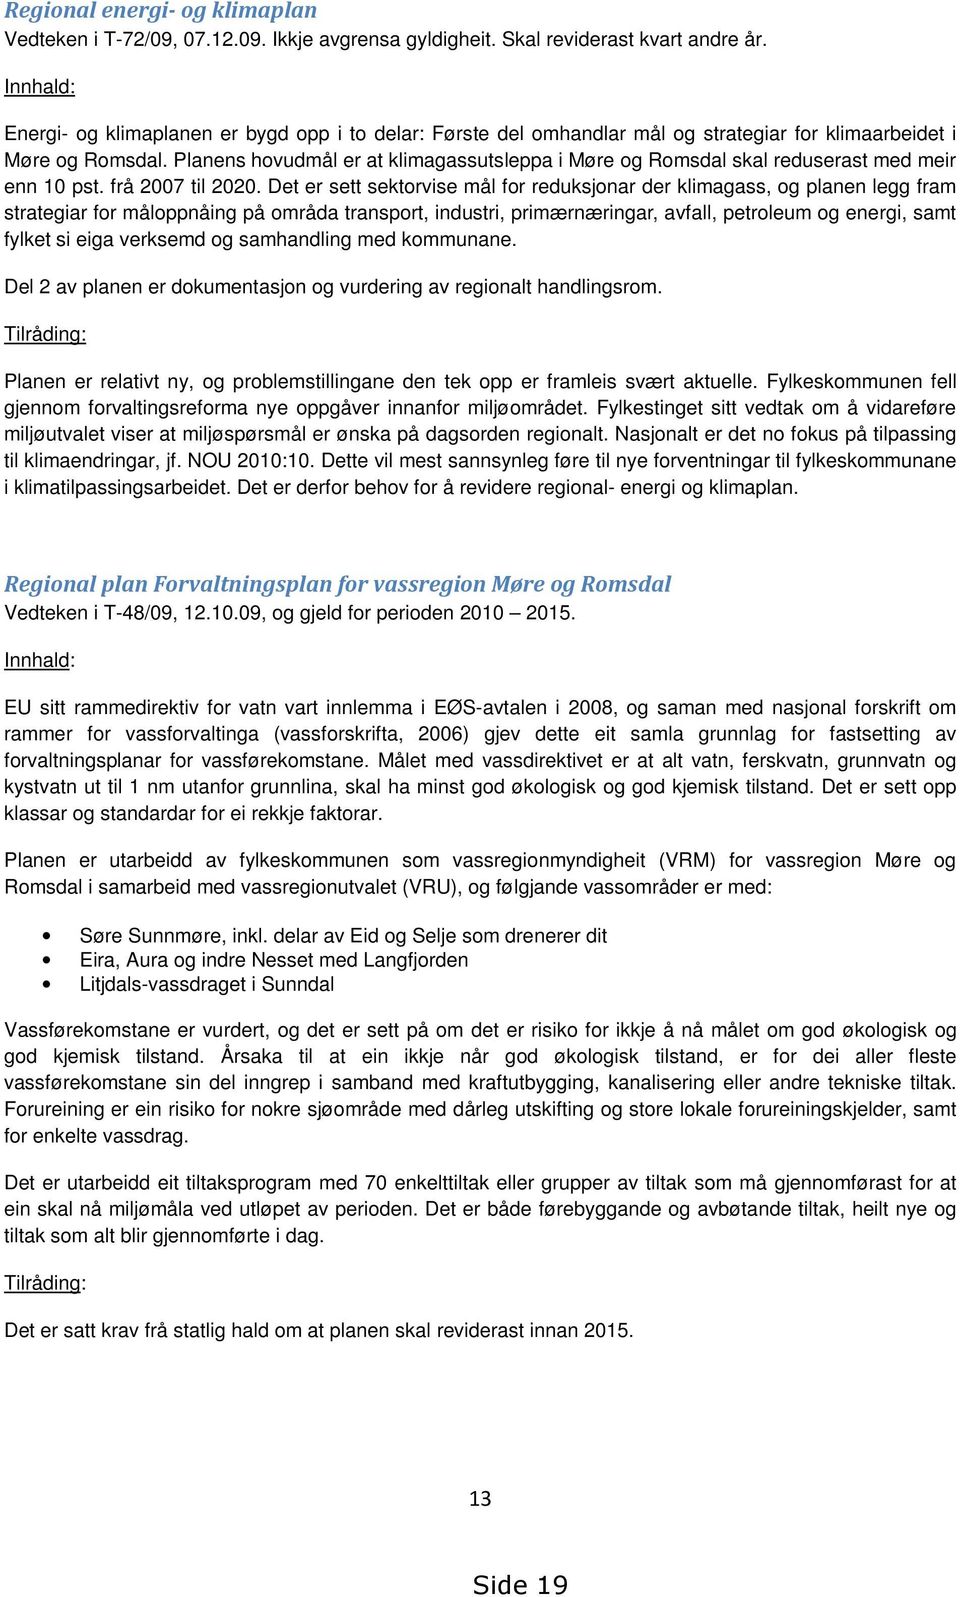 Planens hovudmål er at klimagassutsleppa i Møre og Romsdal skal reduserast med meir enn 10 pst. frå 2007 til 2020.